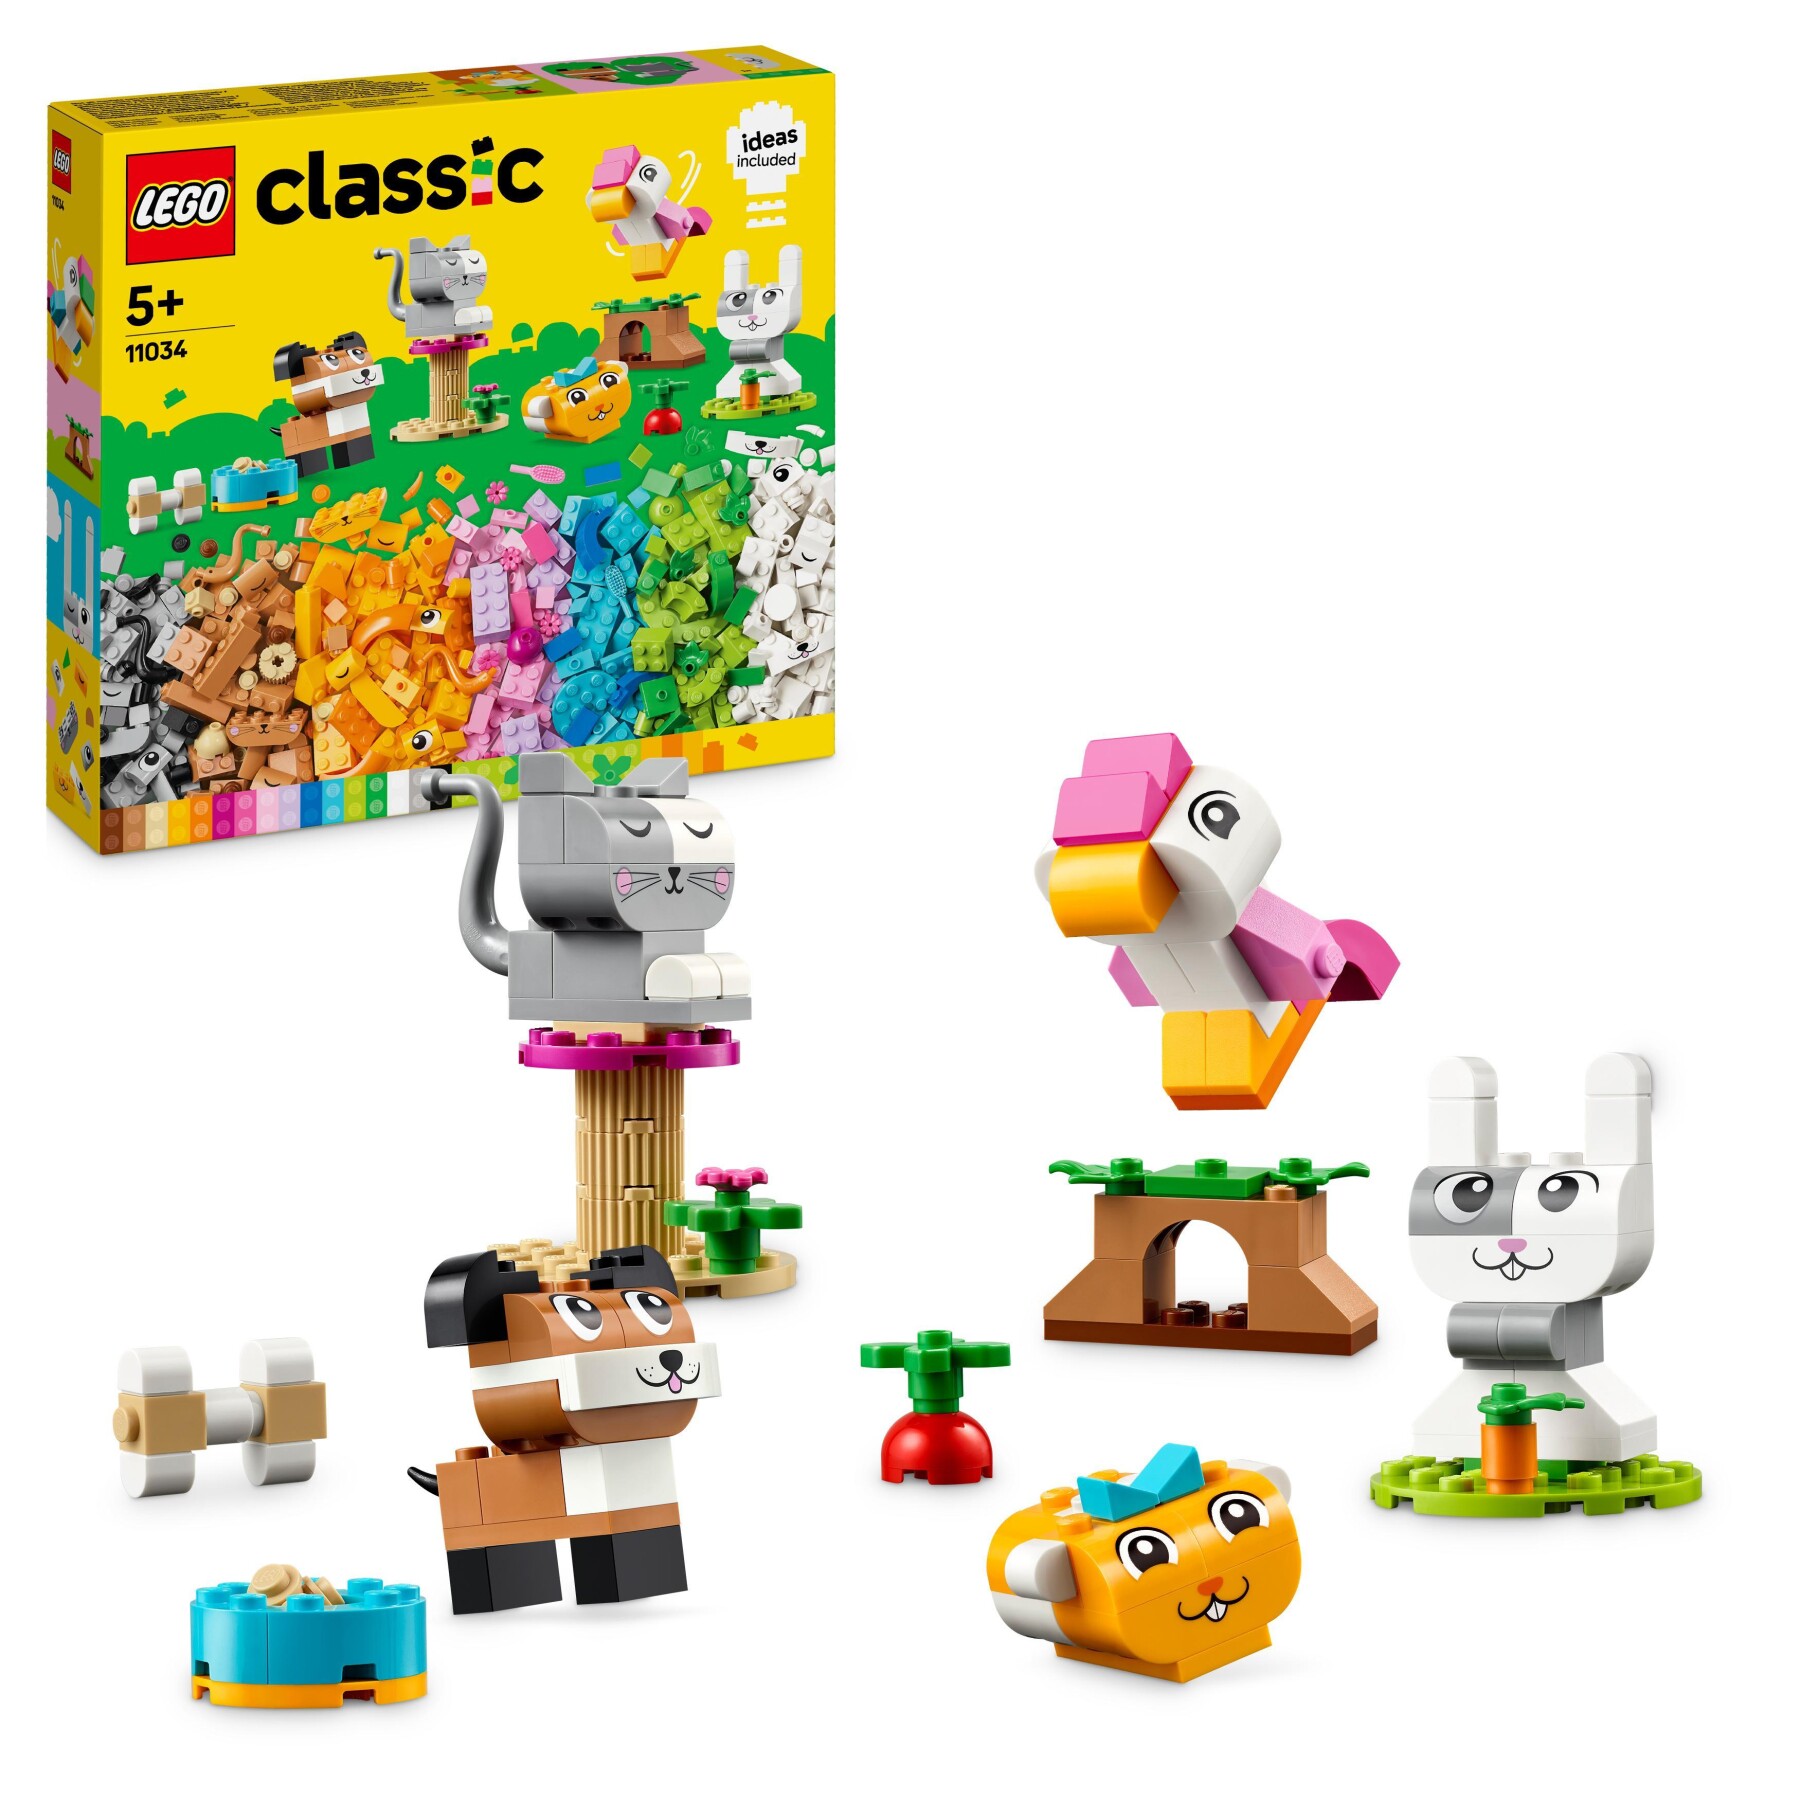 Lego classic 11034 animali domestici creativi, giocattolo per bambini di 5+ anni per costruire cane, gatto e altri animali - LEGO CLASSIC